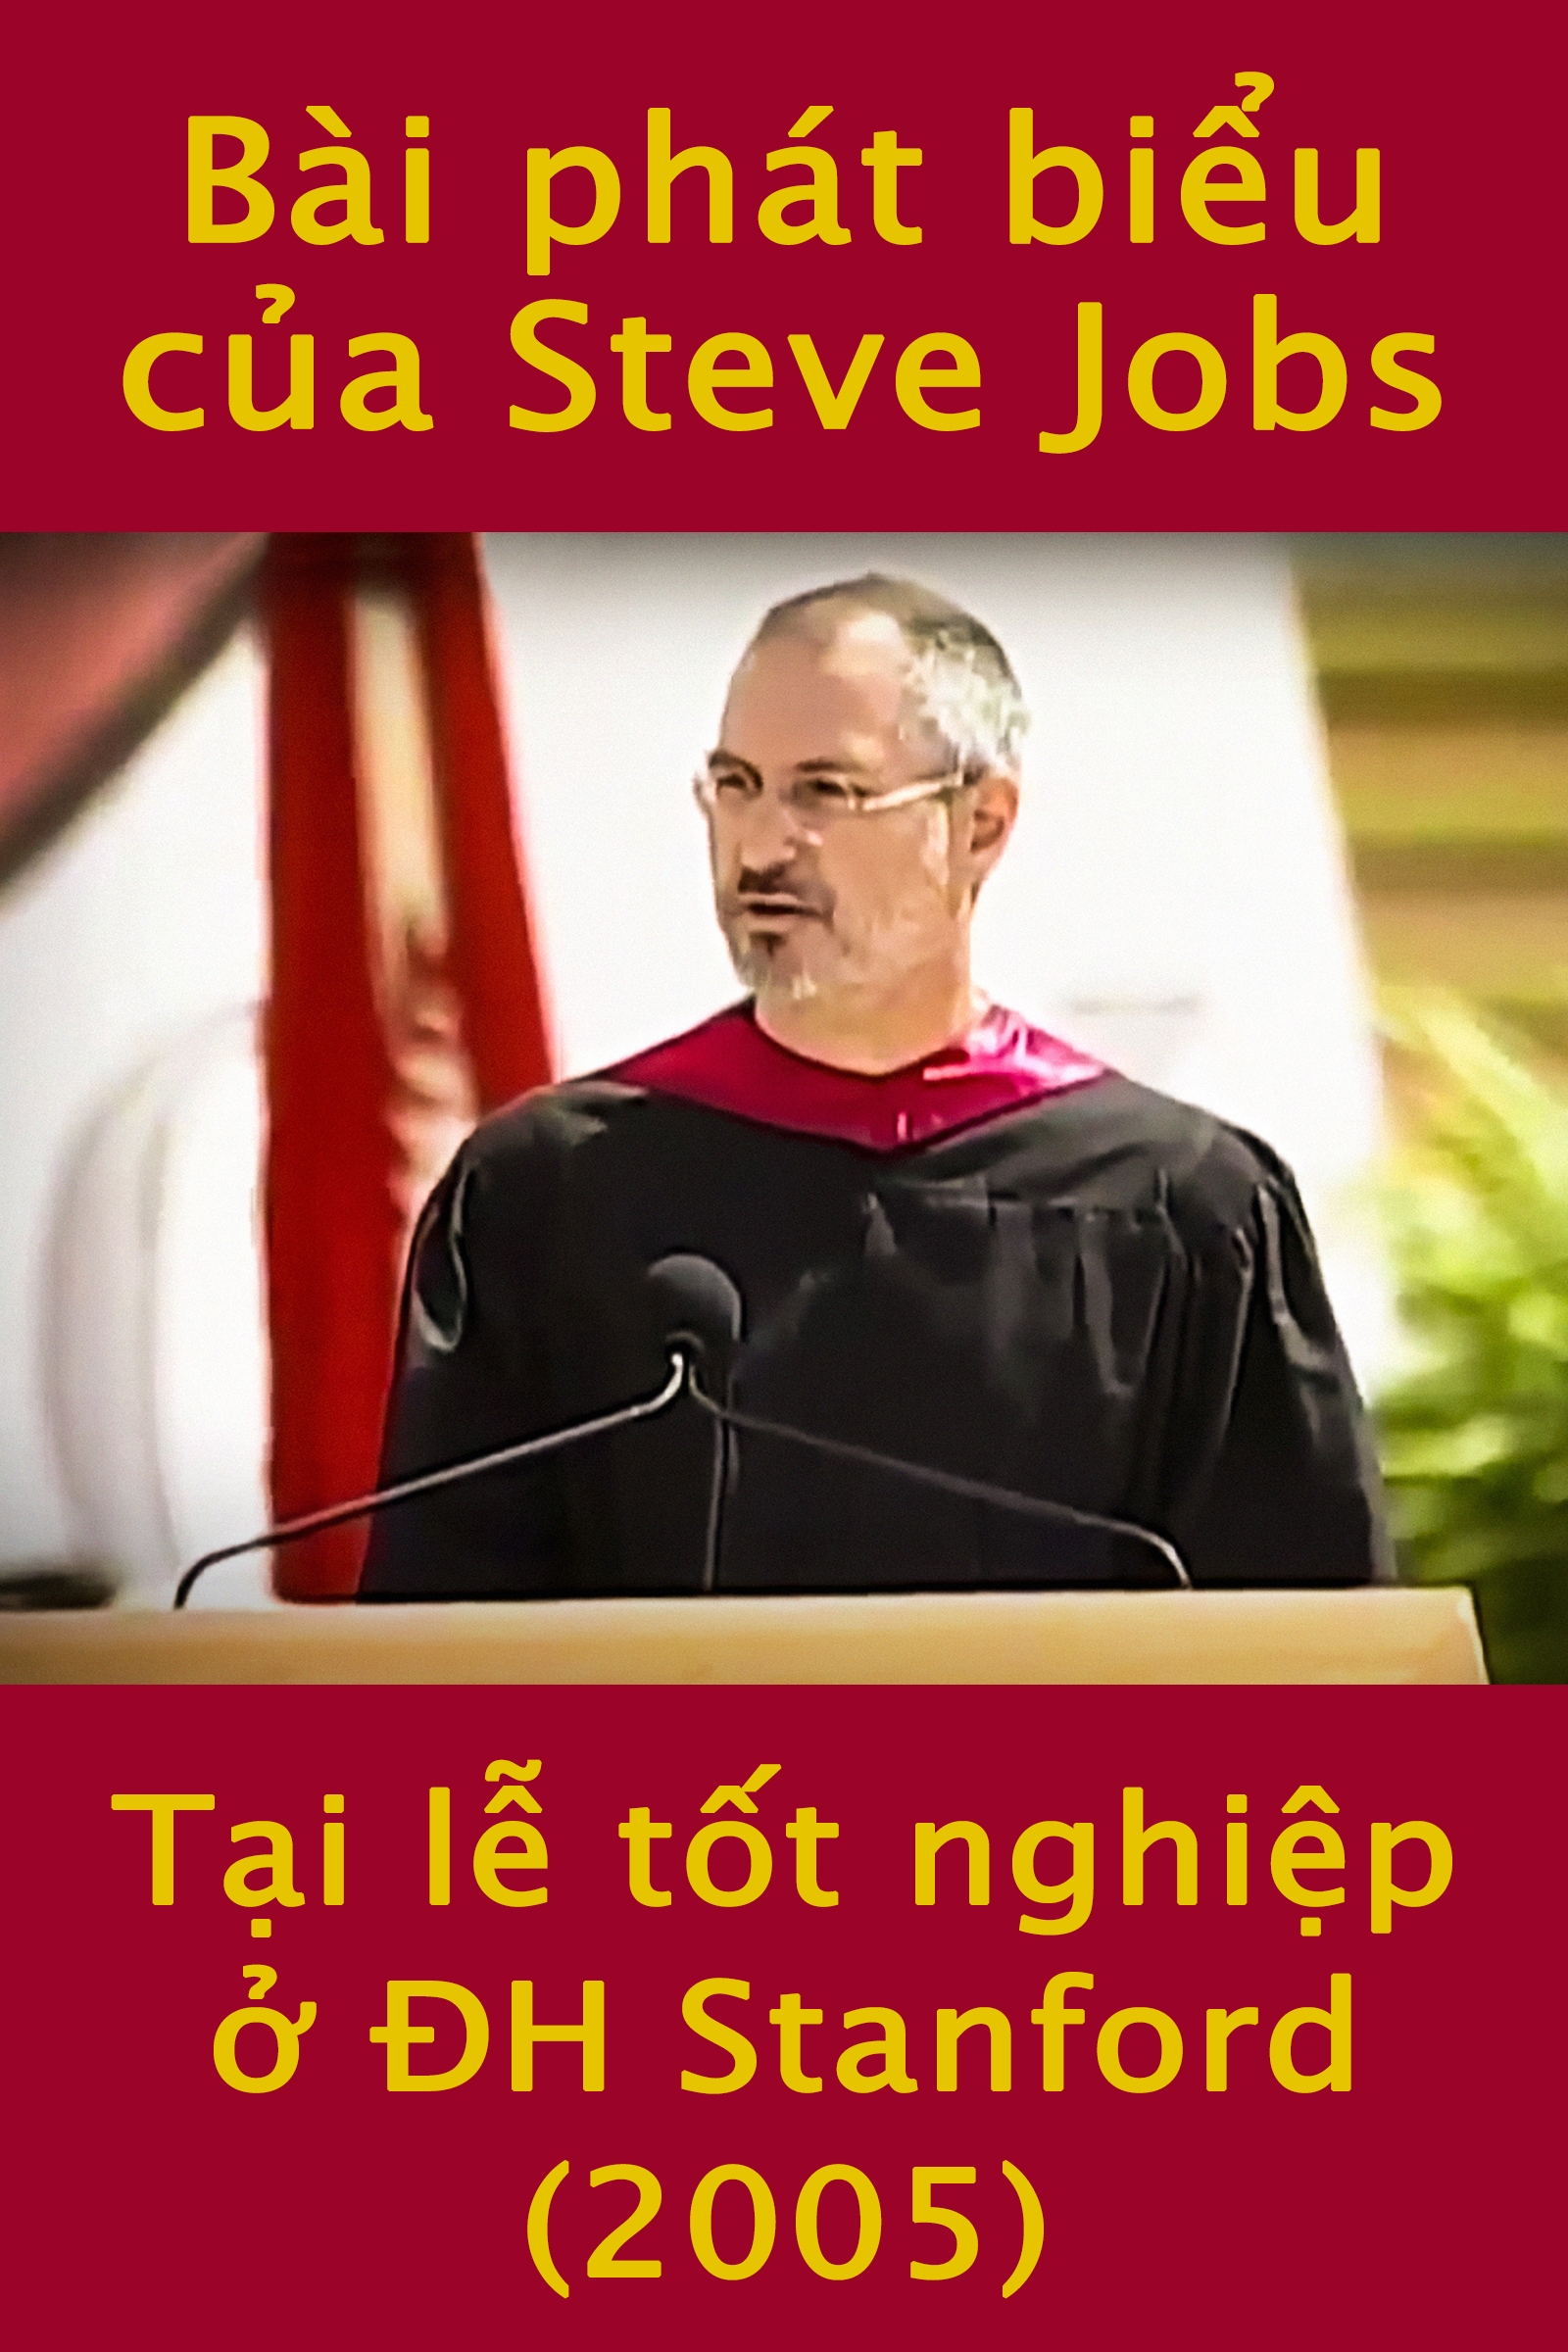 Bài phát biểu của Steve Jobs tại lễ tốt nghiệp ở ĐH Stanford (2005) cover